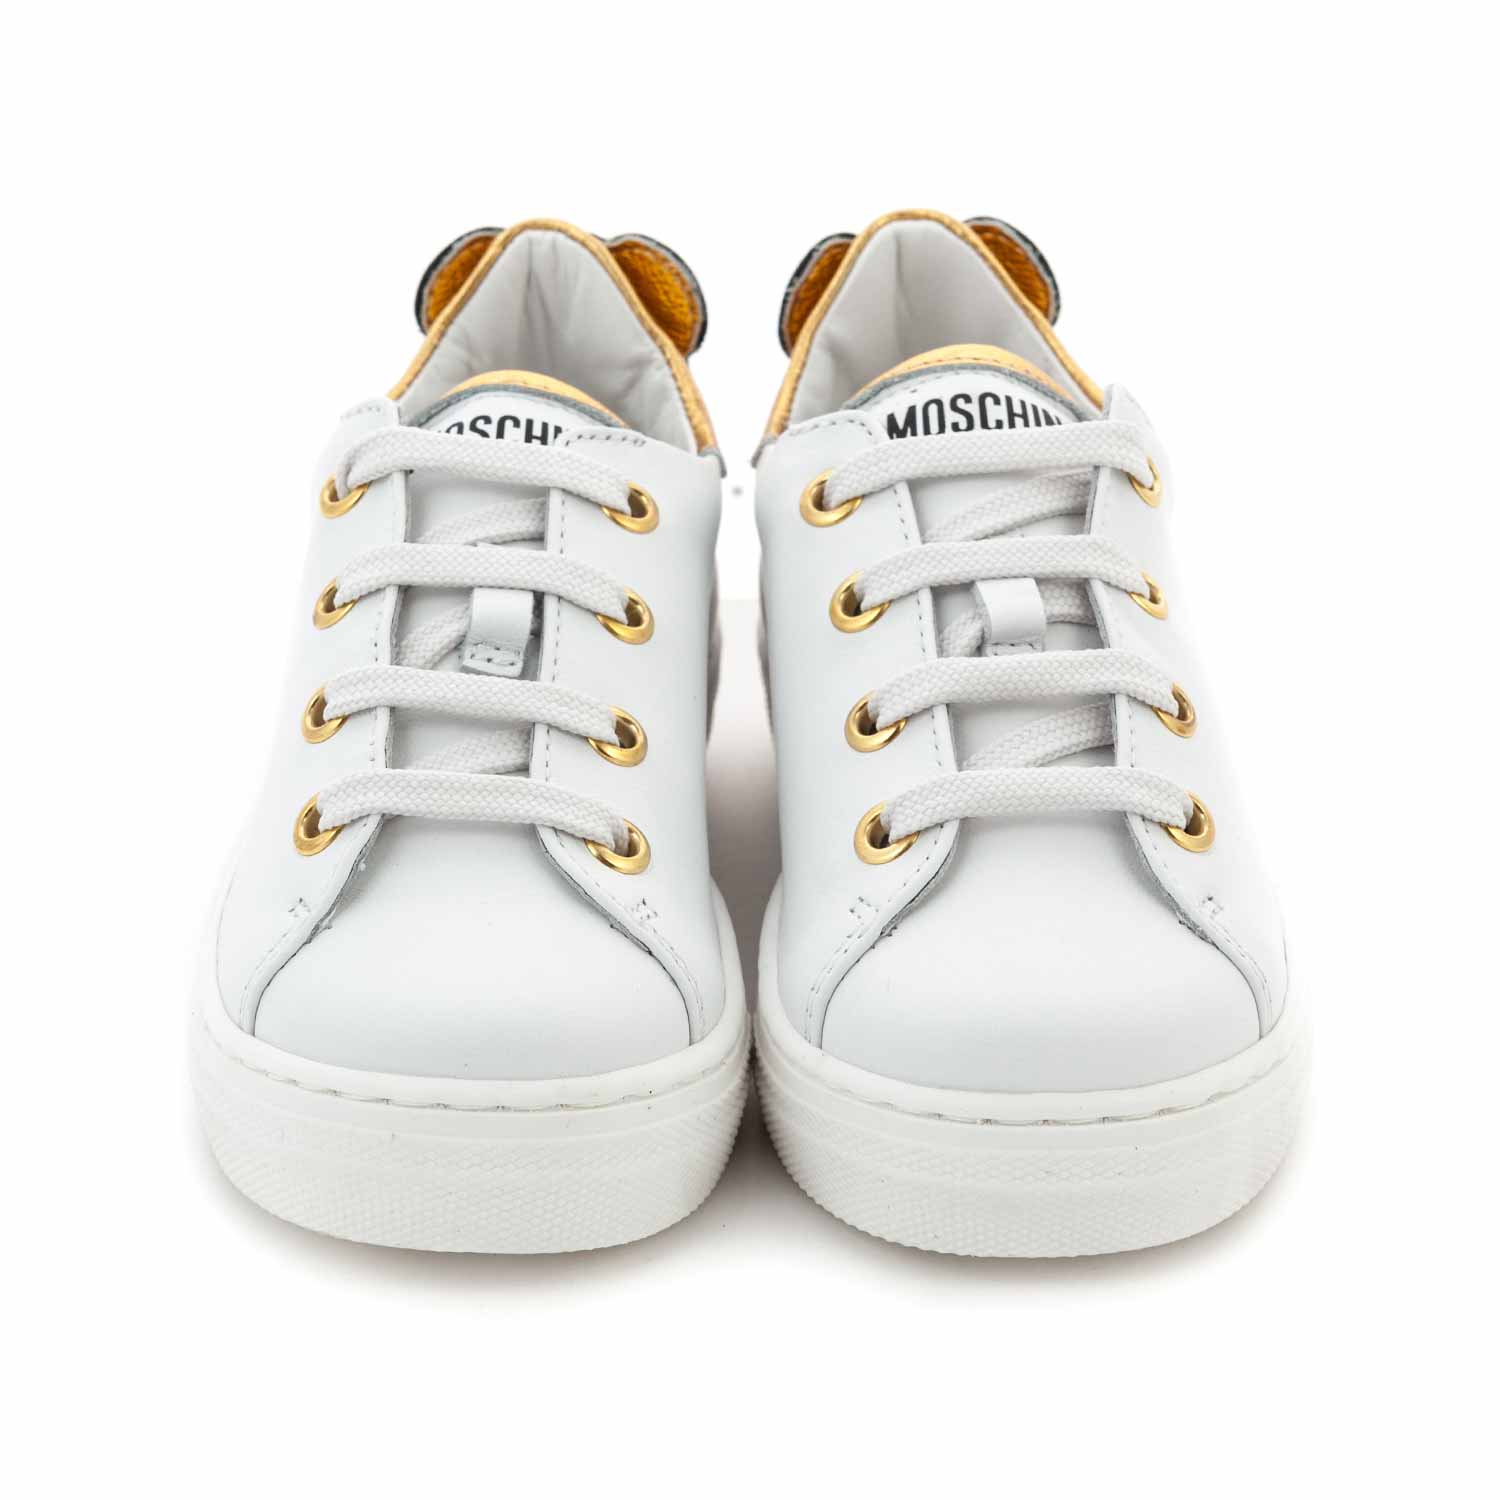 Moschino - Sneakers Bianche Orsetto Bambina - annameglio.com shop online